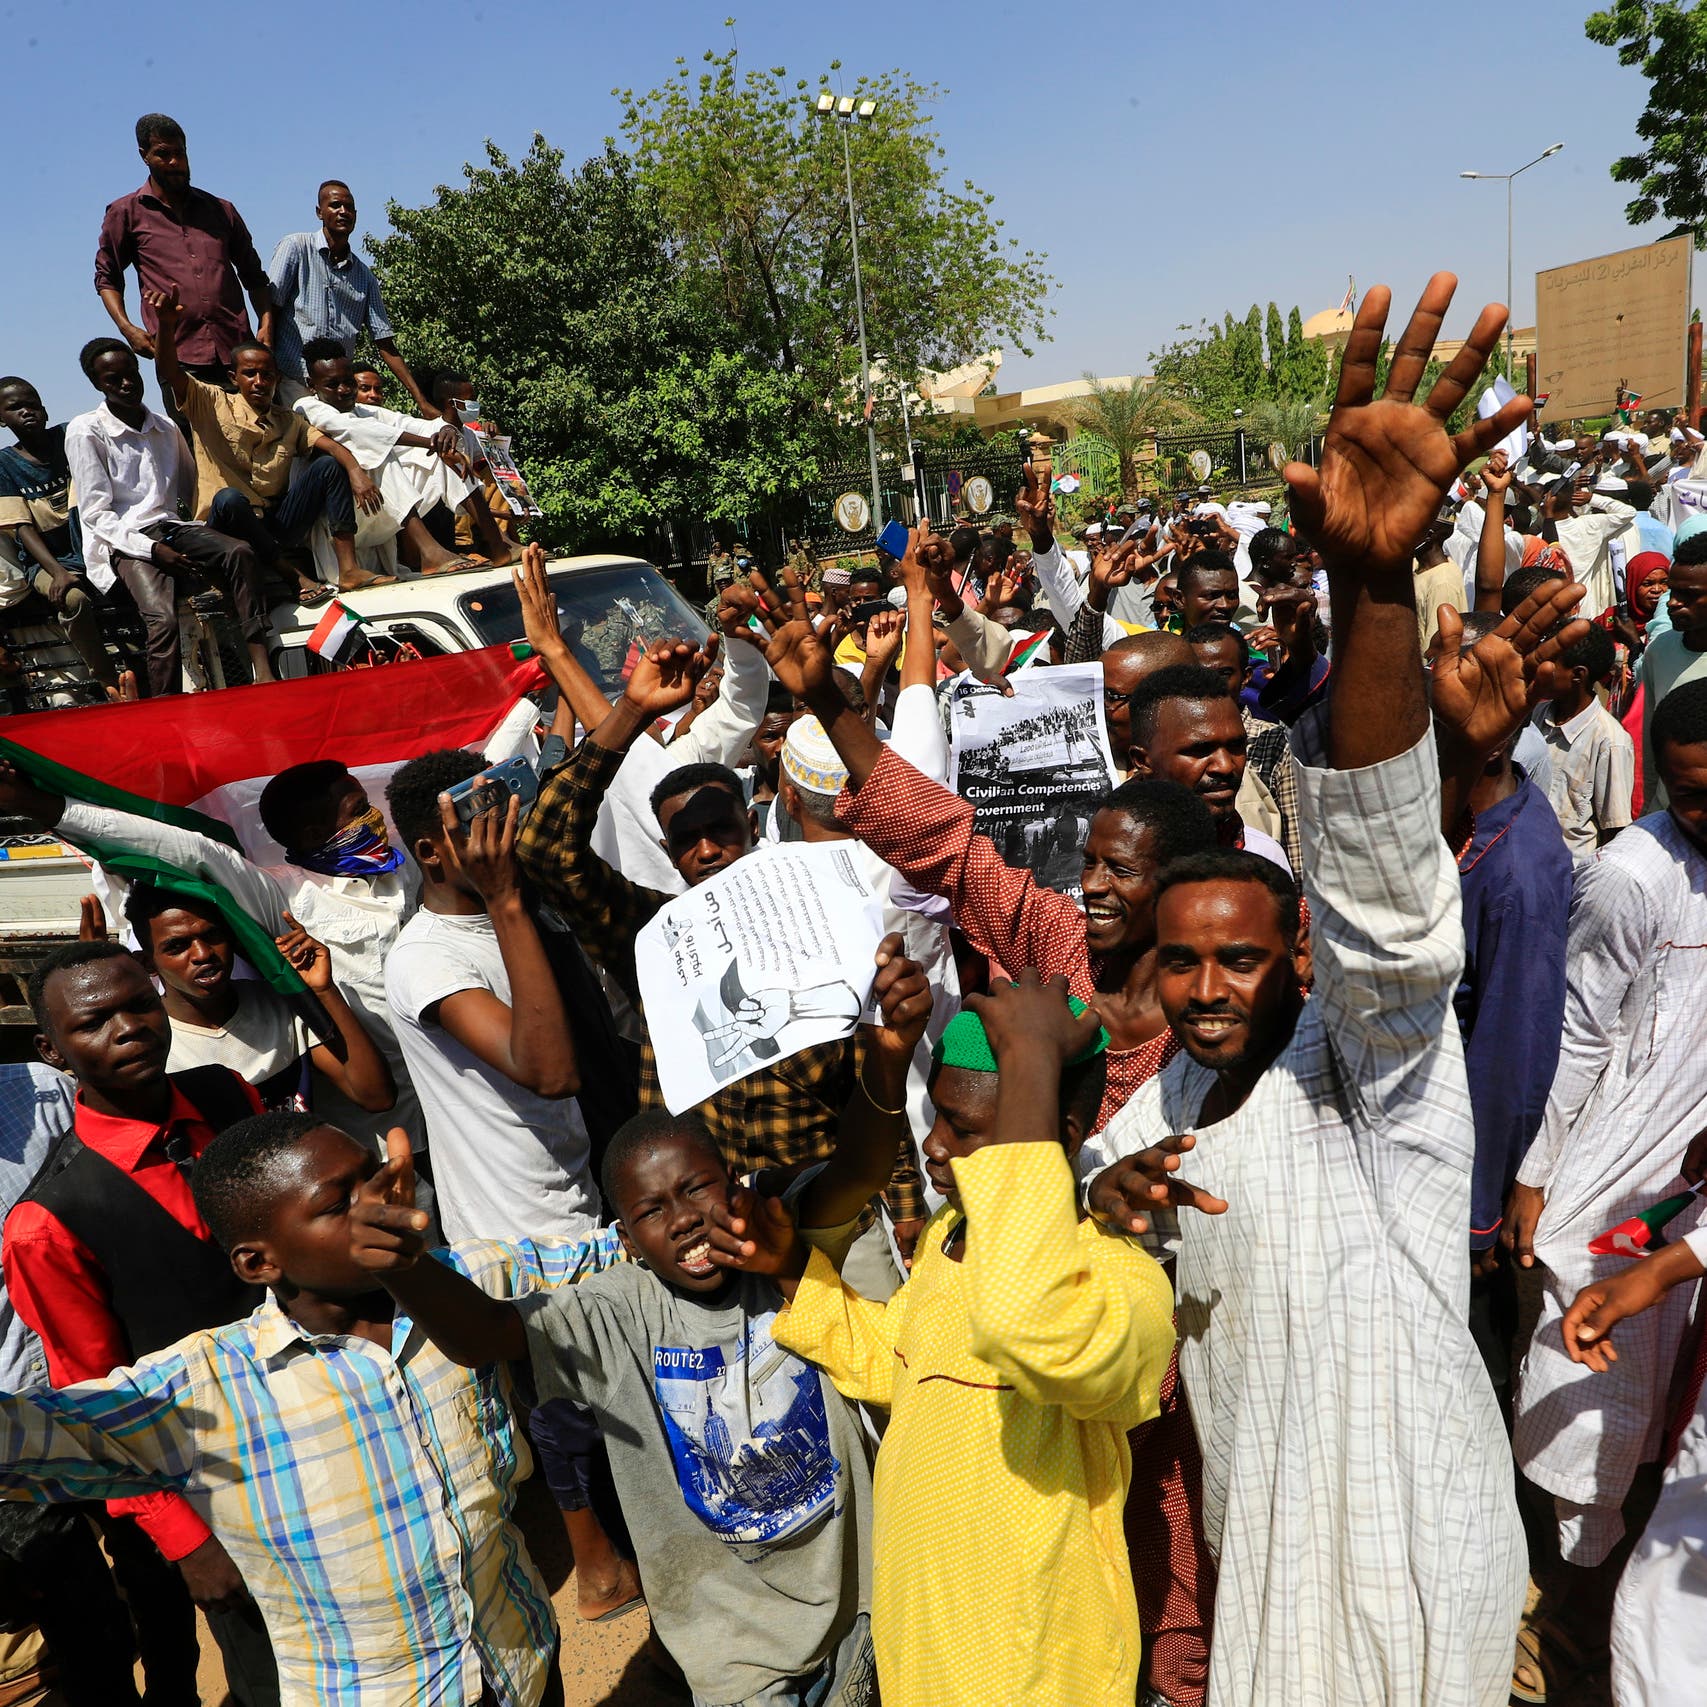 مظاهرات السودان تكشف تصدع الحكومة.. من ضد من؟!